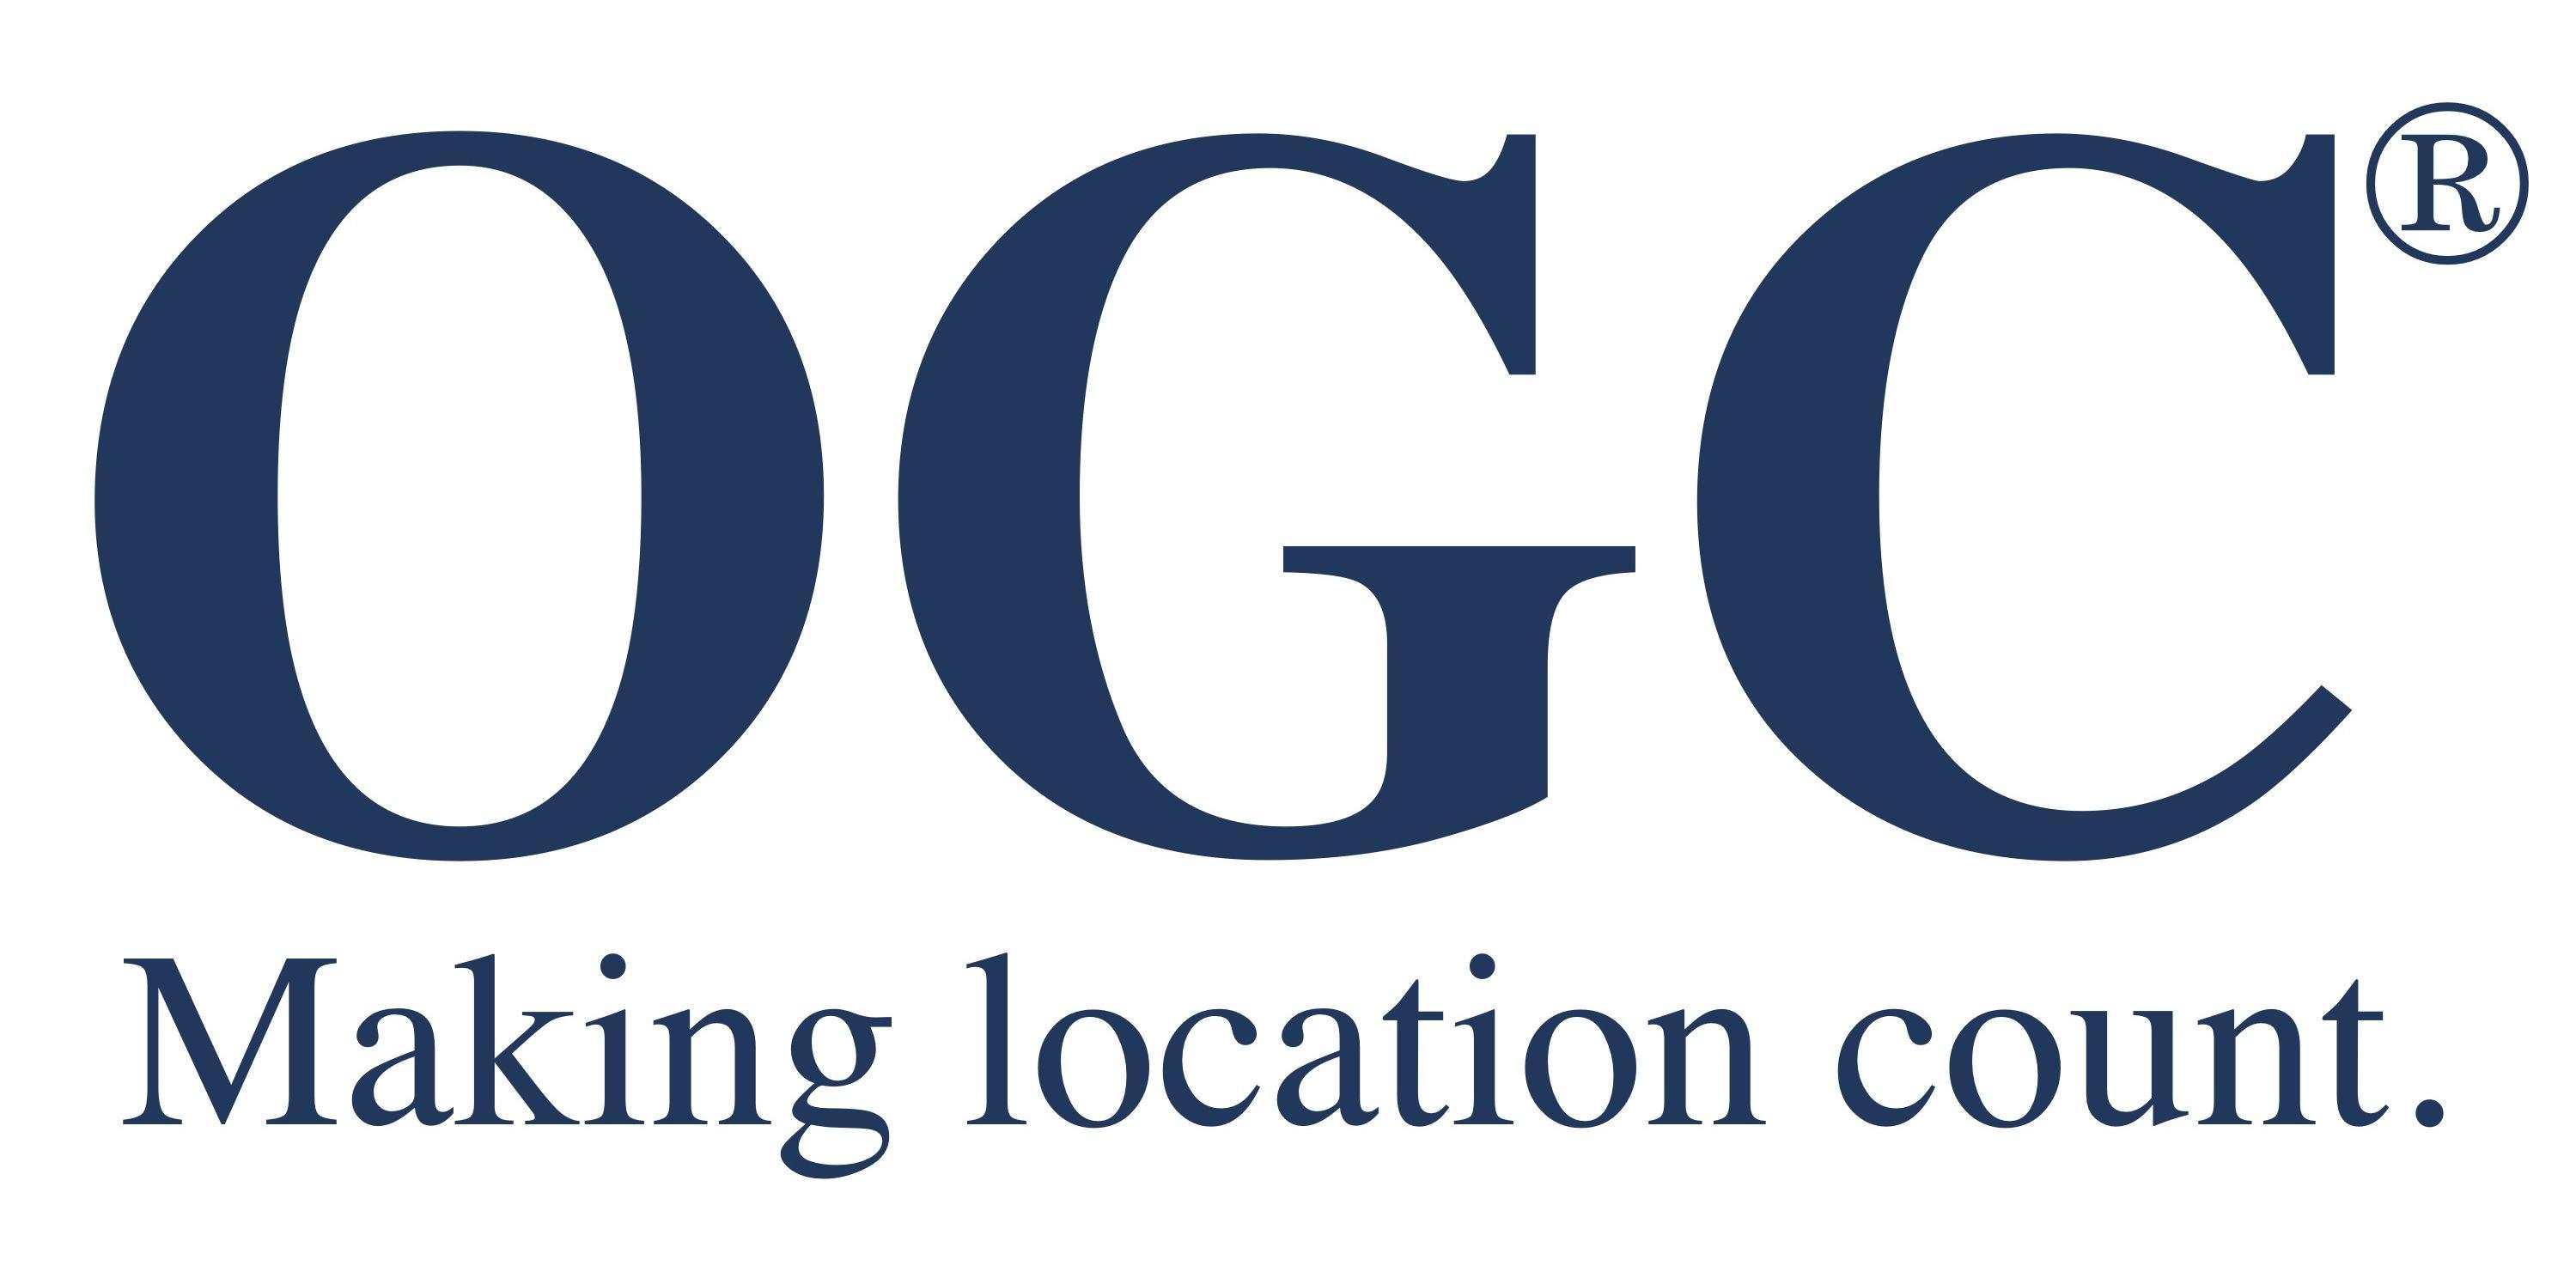 OGC Logo - OGC announces Part 3 of the WaterML 2 suite of standards